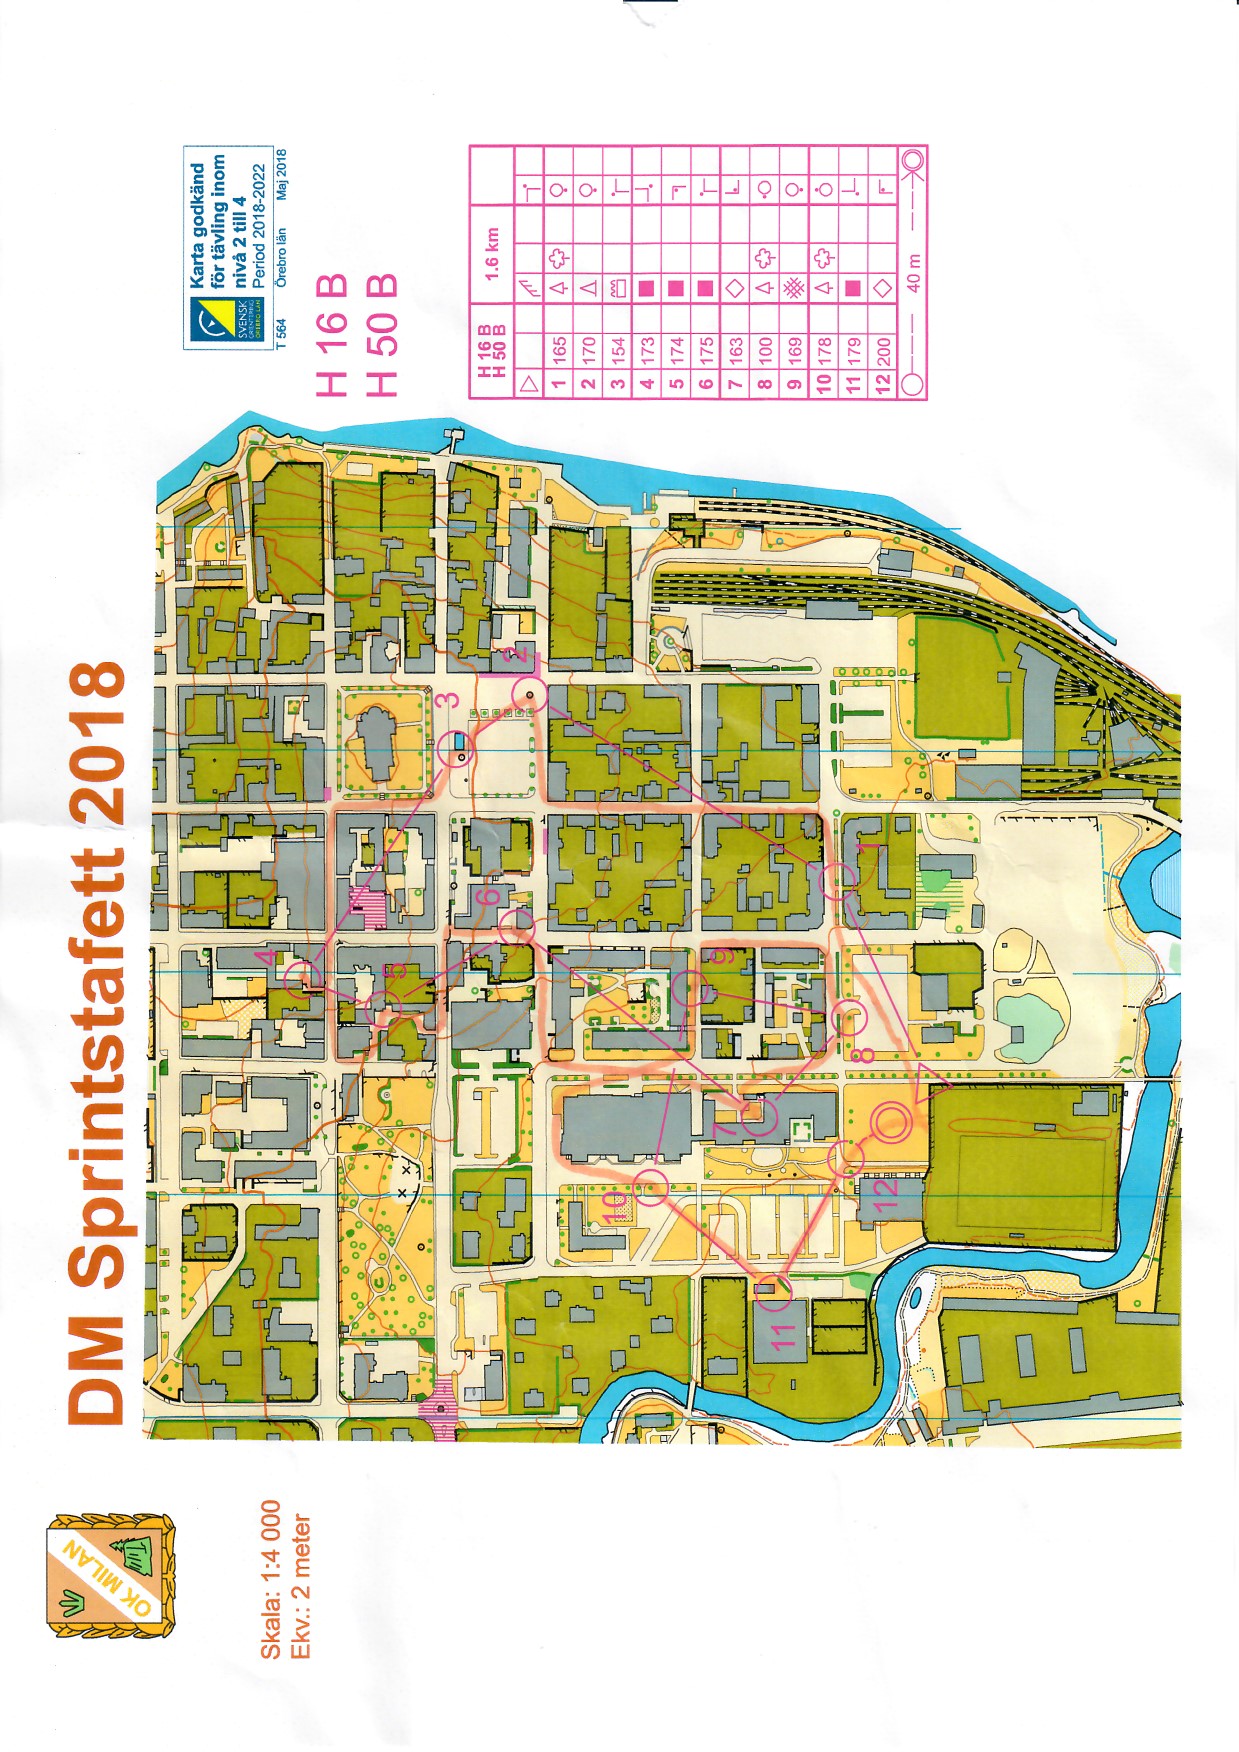 DM Sprintstafett, Örebro (10-06-2018)